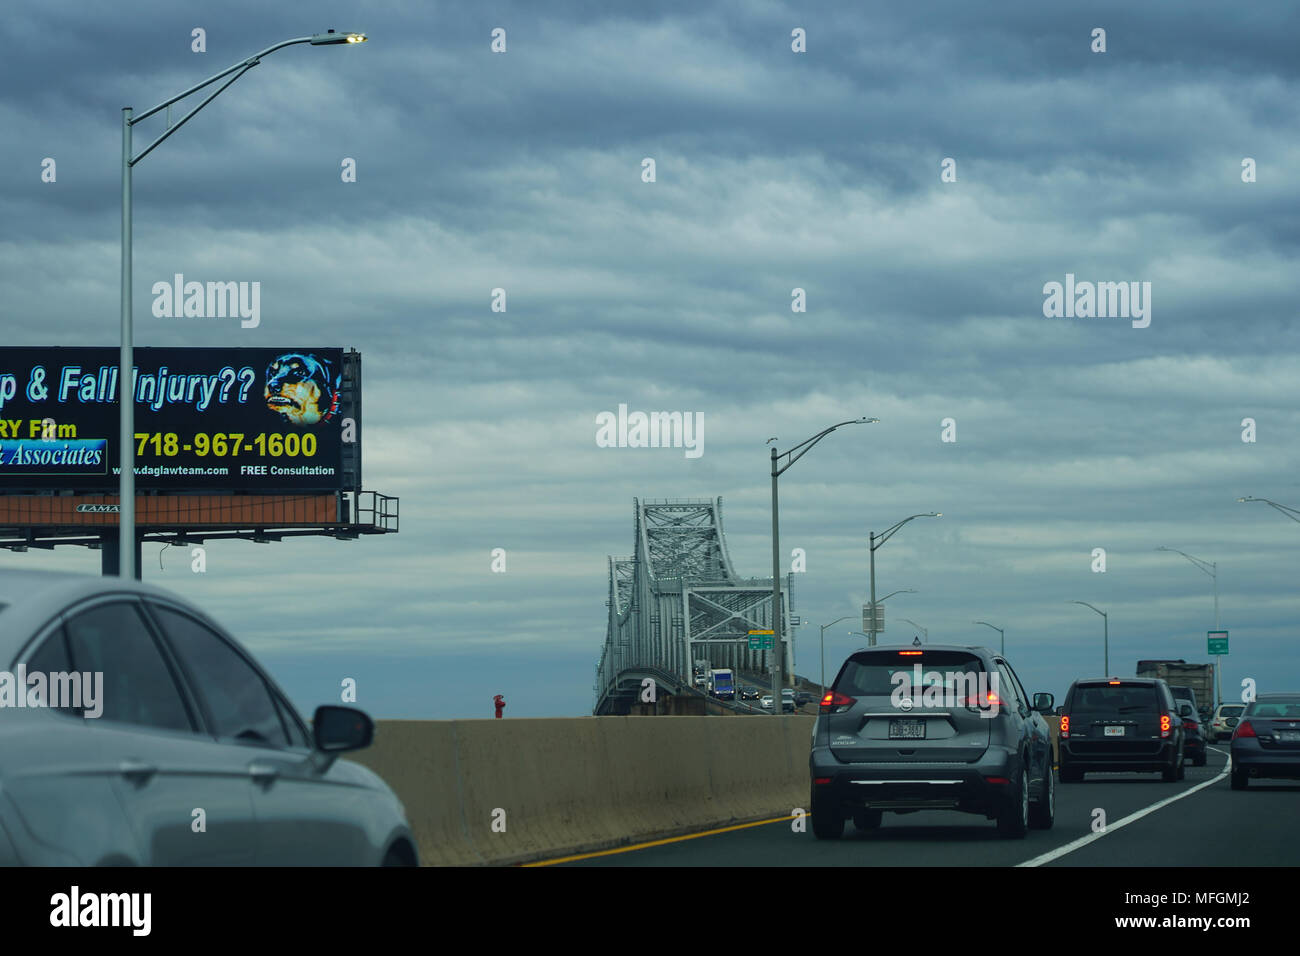 Ein Blick auf den Goethals Brücke, Staten Island, New Jersey, in den Vereinigten Staaten. Aus einer Reihe von Fotos in den Vereinigten Staaten. Pho Stockfoto